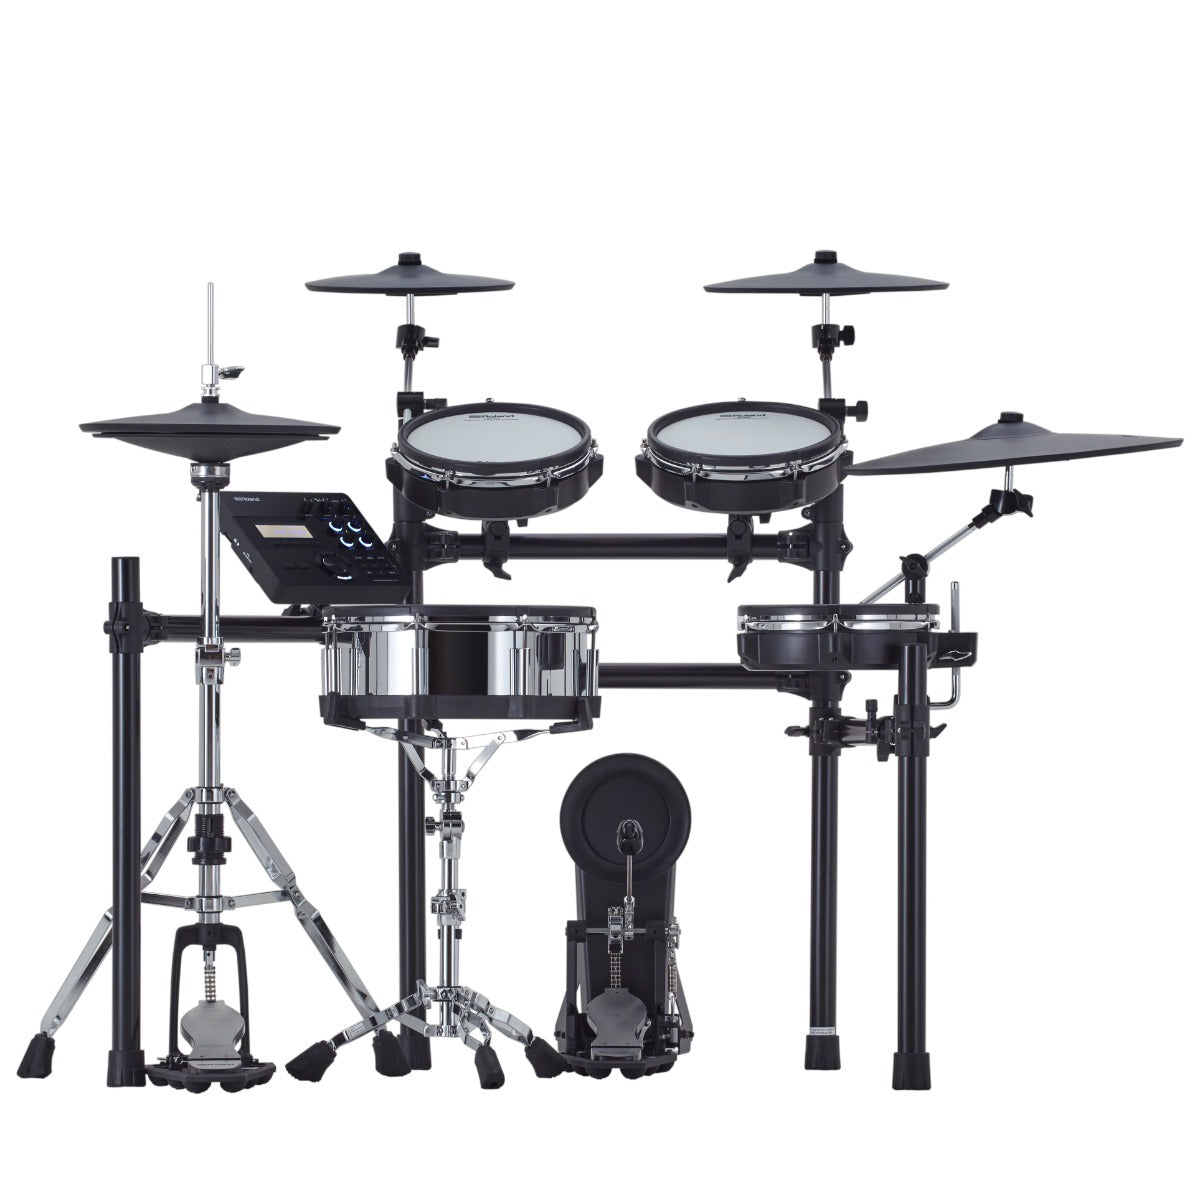 Roland TD-27KV2 V-Drums Electronic Drum Set, View 1